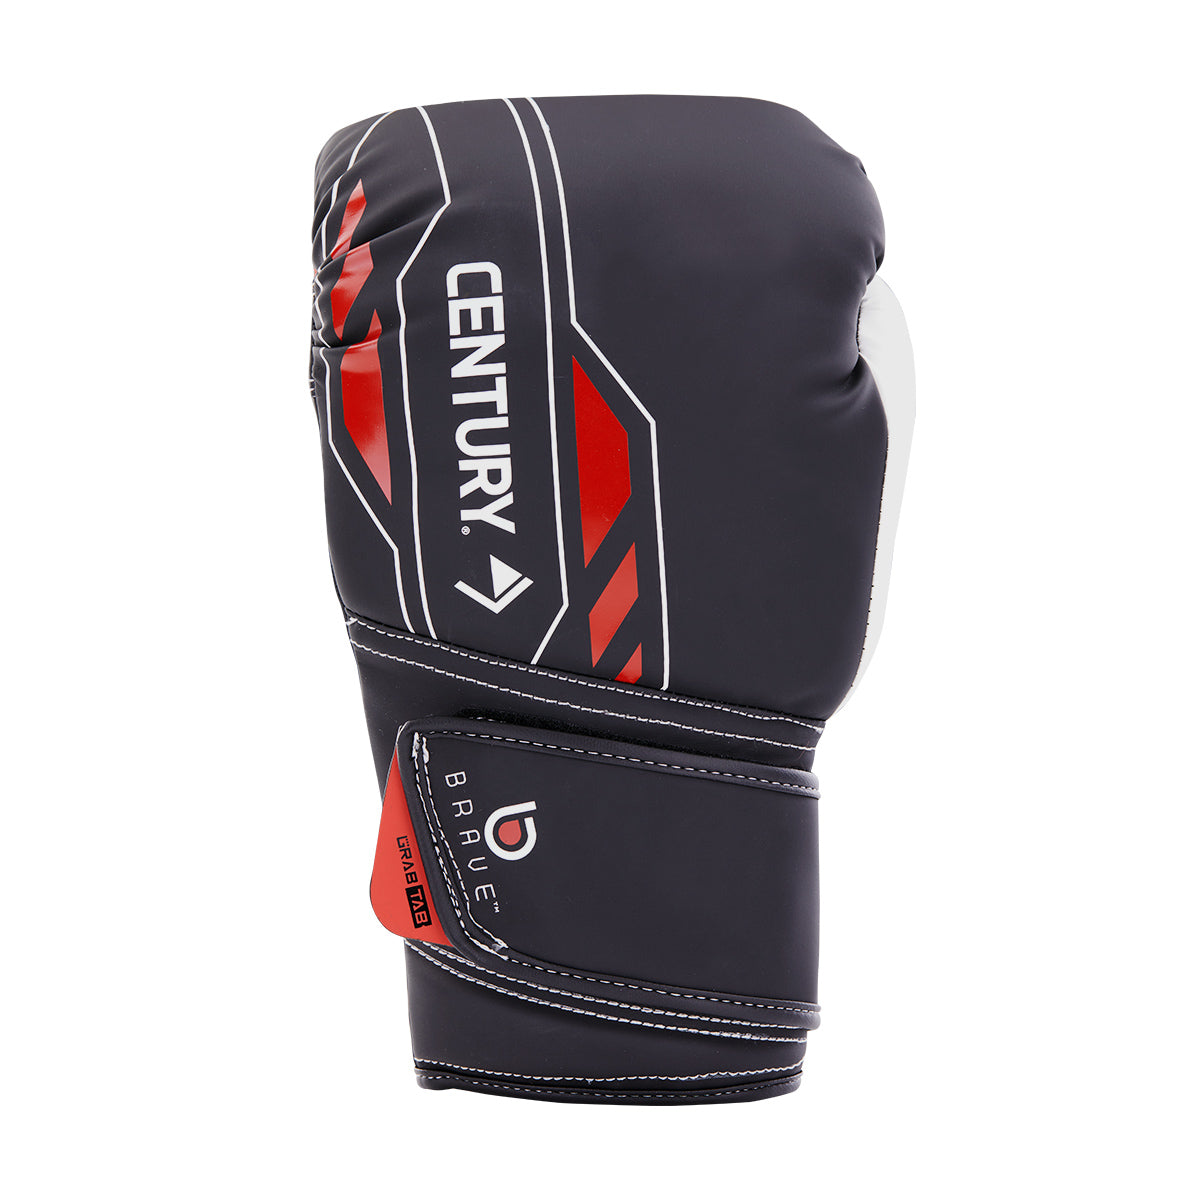 Brave Boxing Gloves - Black/White/Red